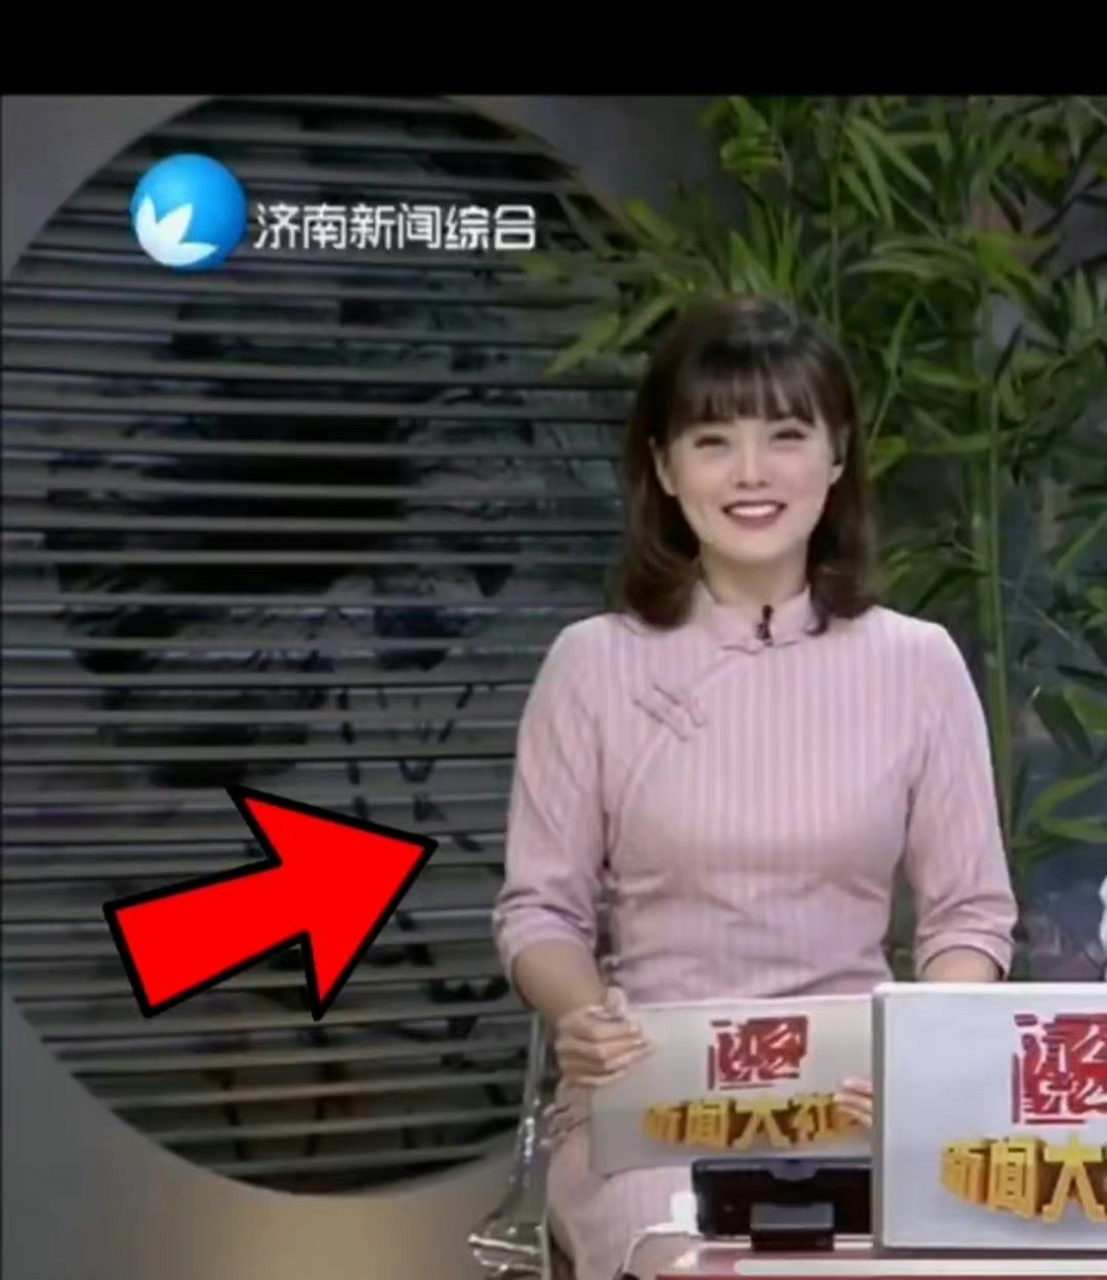 济南电视台的主持人小鱼儿确实是个挺亲民的主持人